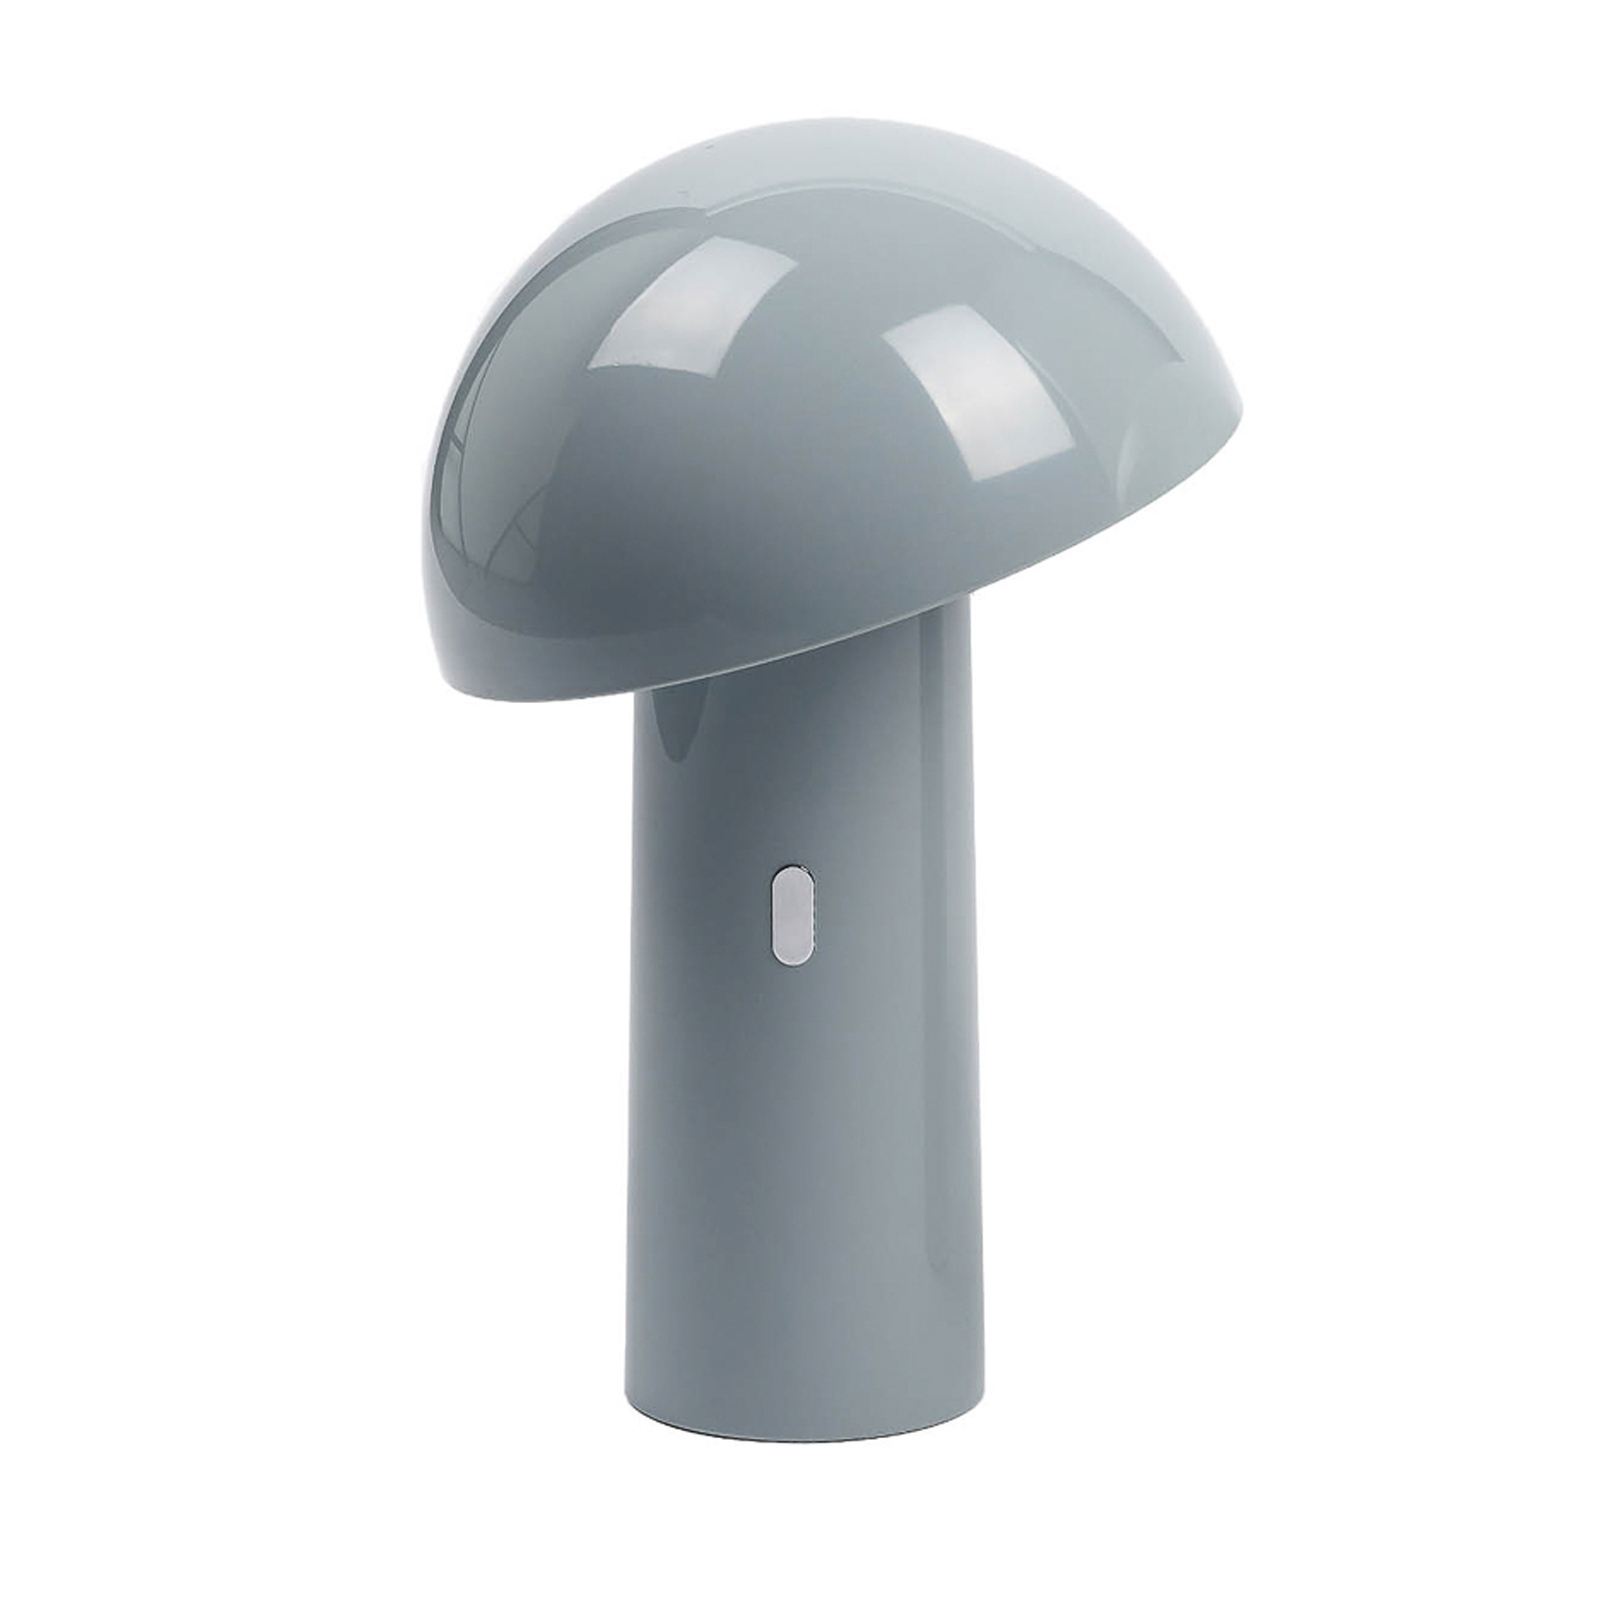 Aluminor Capsule LED asztali lámpa, mobil, szürke